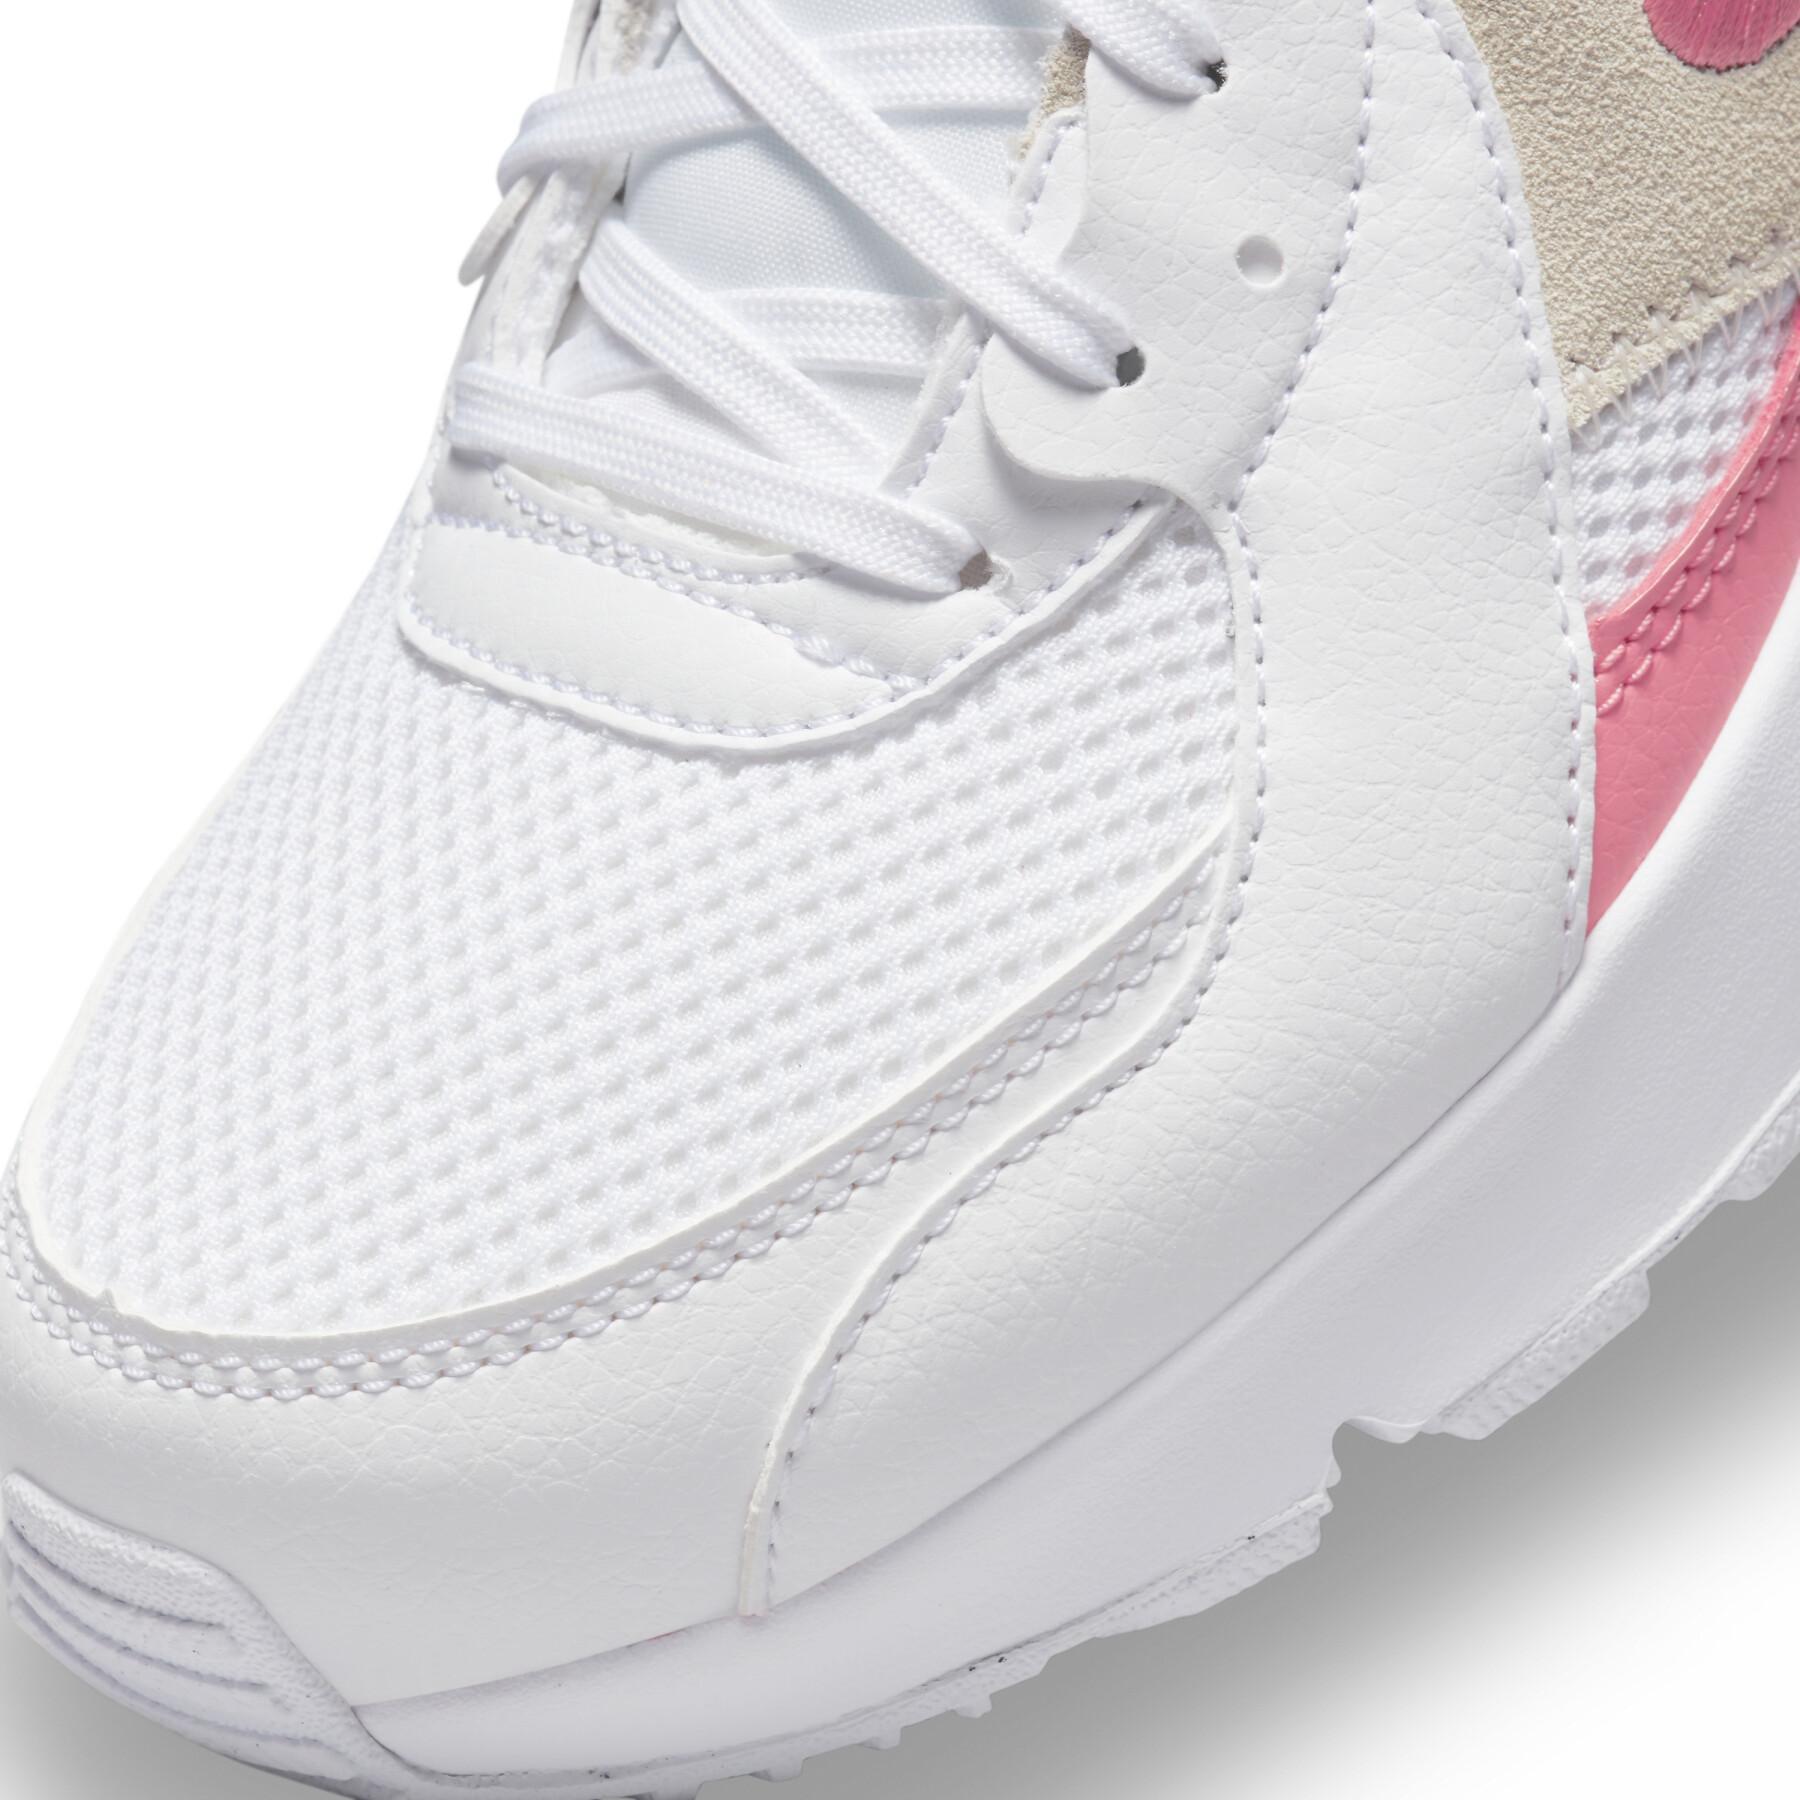 Sneakers für Frauen Nike Air Max Excee